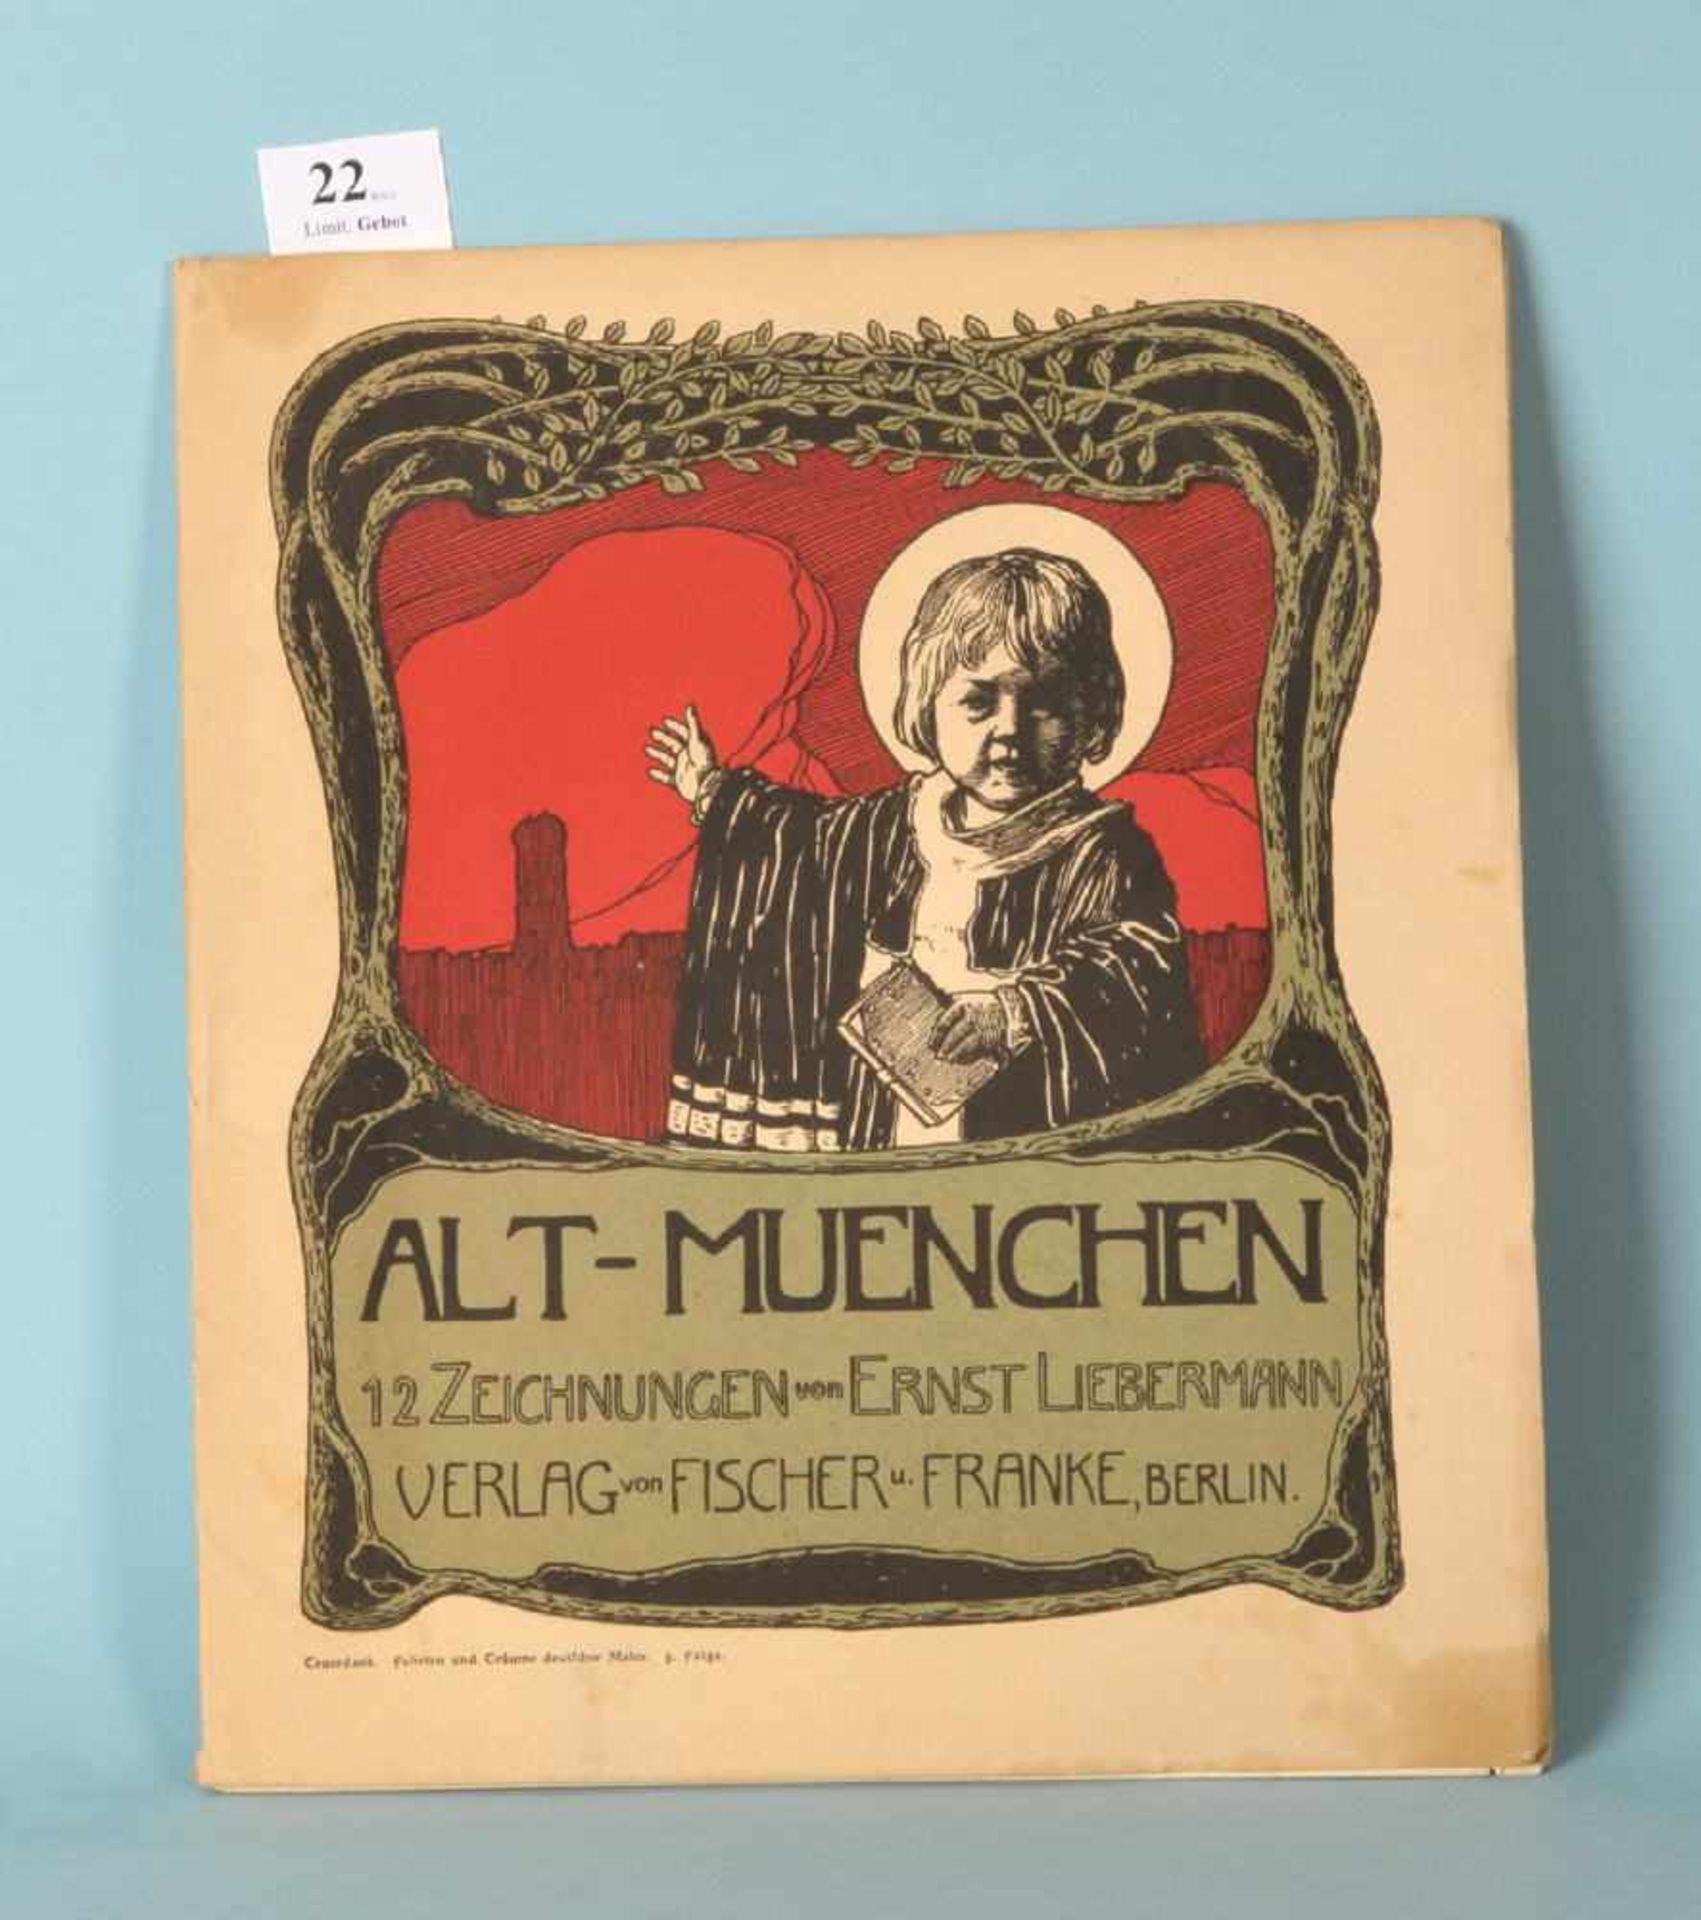 Liebermann, Ernst "Alt-Muenchen - 12 Zeichnungen"Mappe mit 12 Bildtafeln, Vlg. Fischer u. Franke,